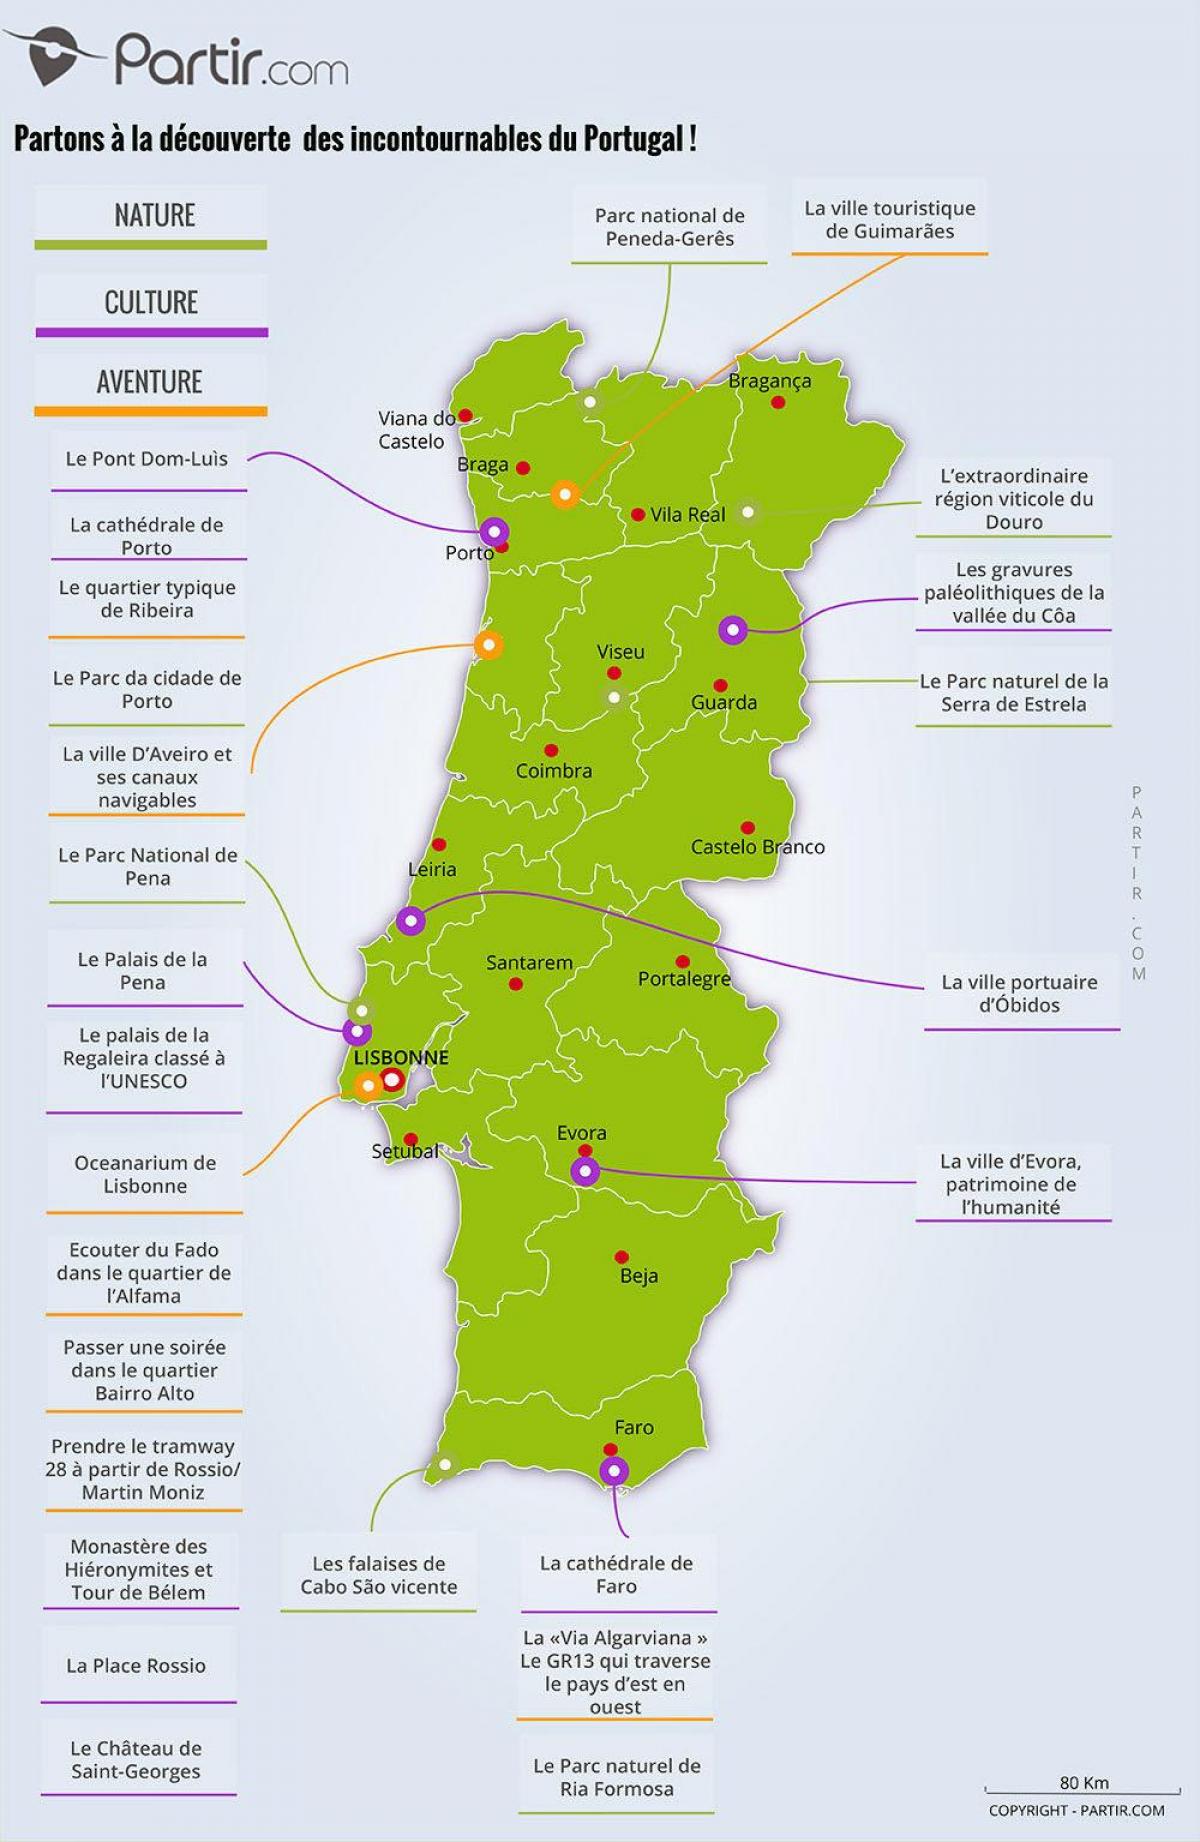 葡萄牙的博物馆的地图